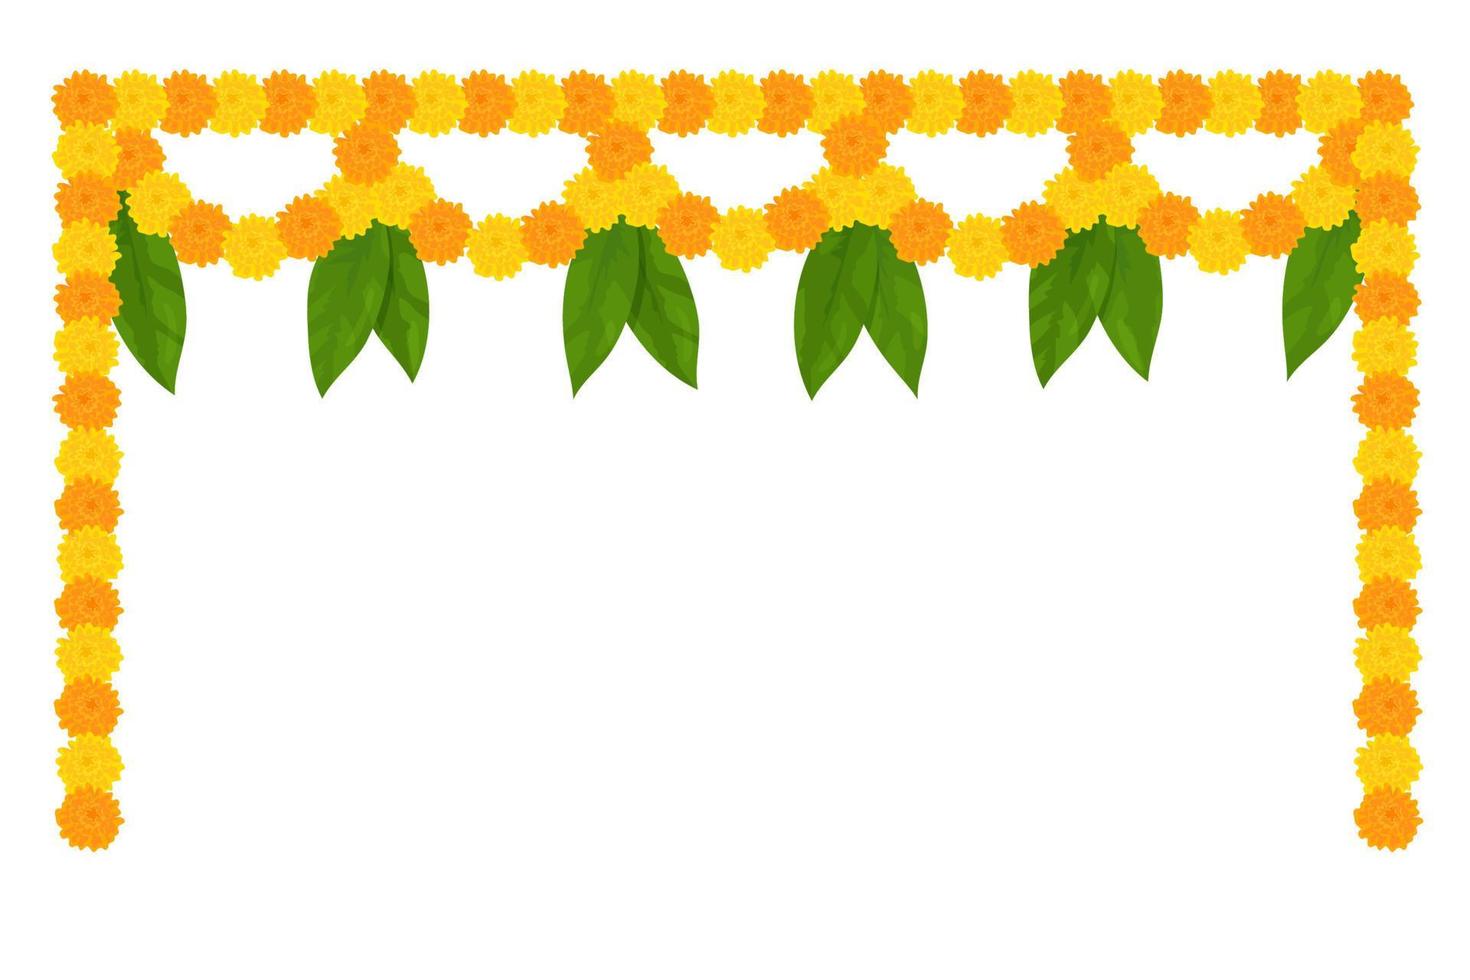 guirnalda tradicional de flores indias con flores de caléndula y hojas de mango. decoración para fiestas hindúes indias. ilustración vectorial aislado sobre fondo blanco. vector